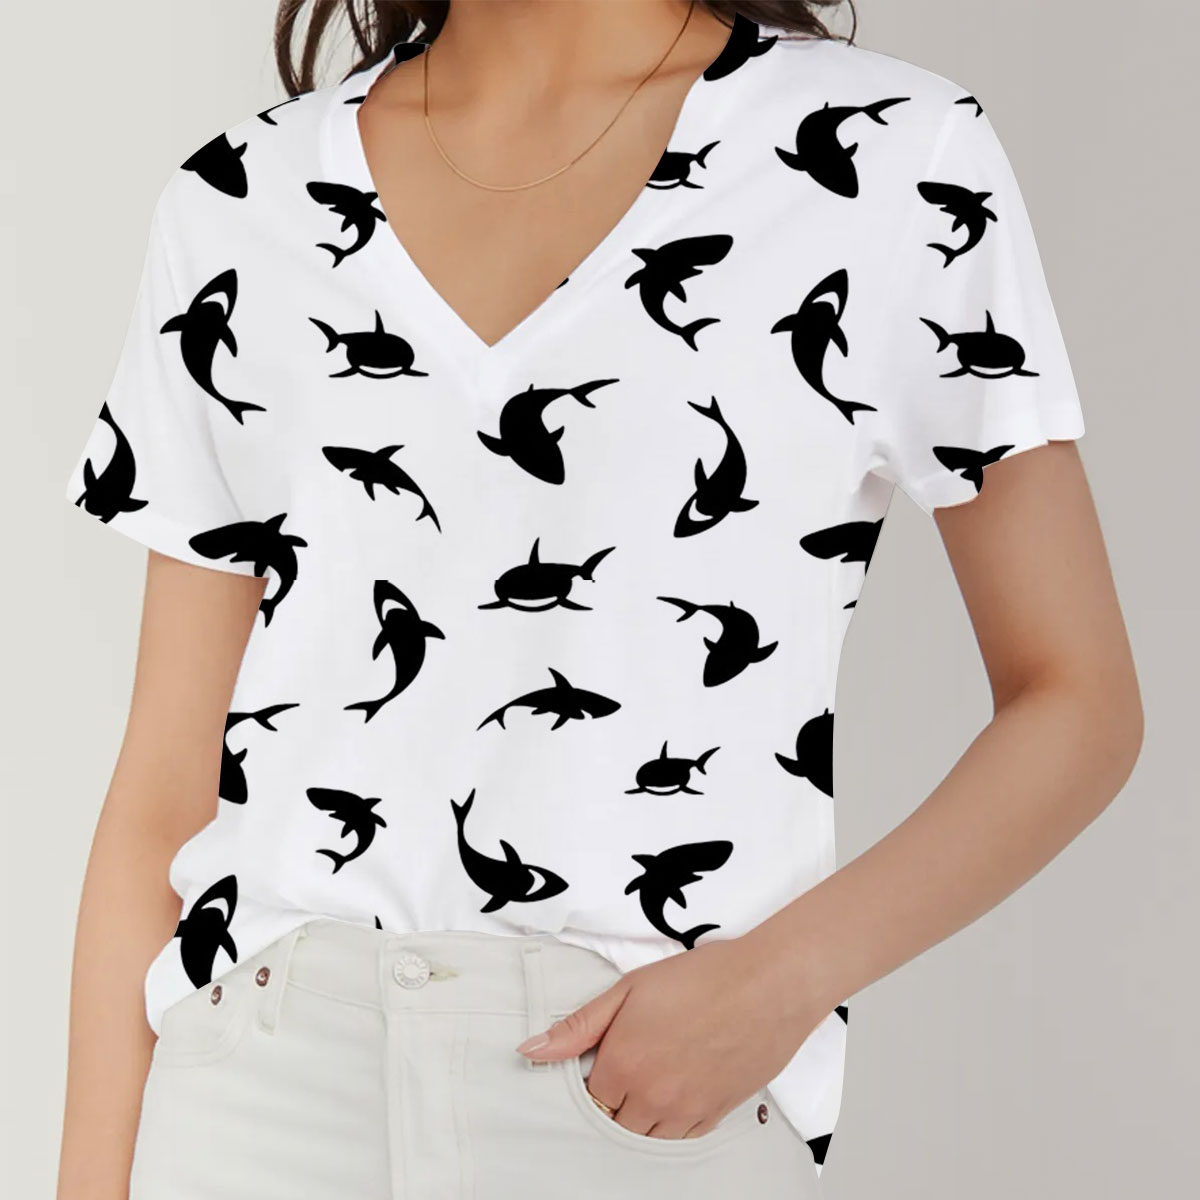 Black Great White Shark On White V-Neck Women's T-Shirt